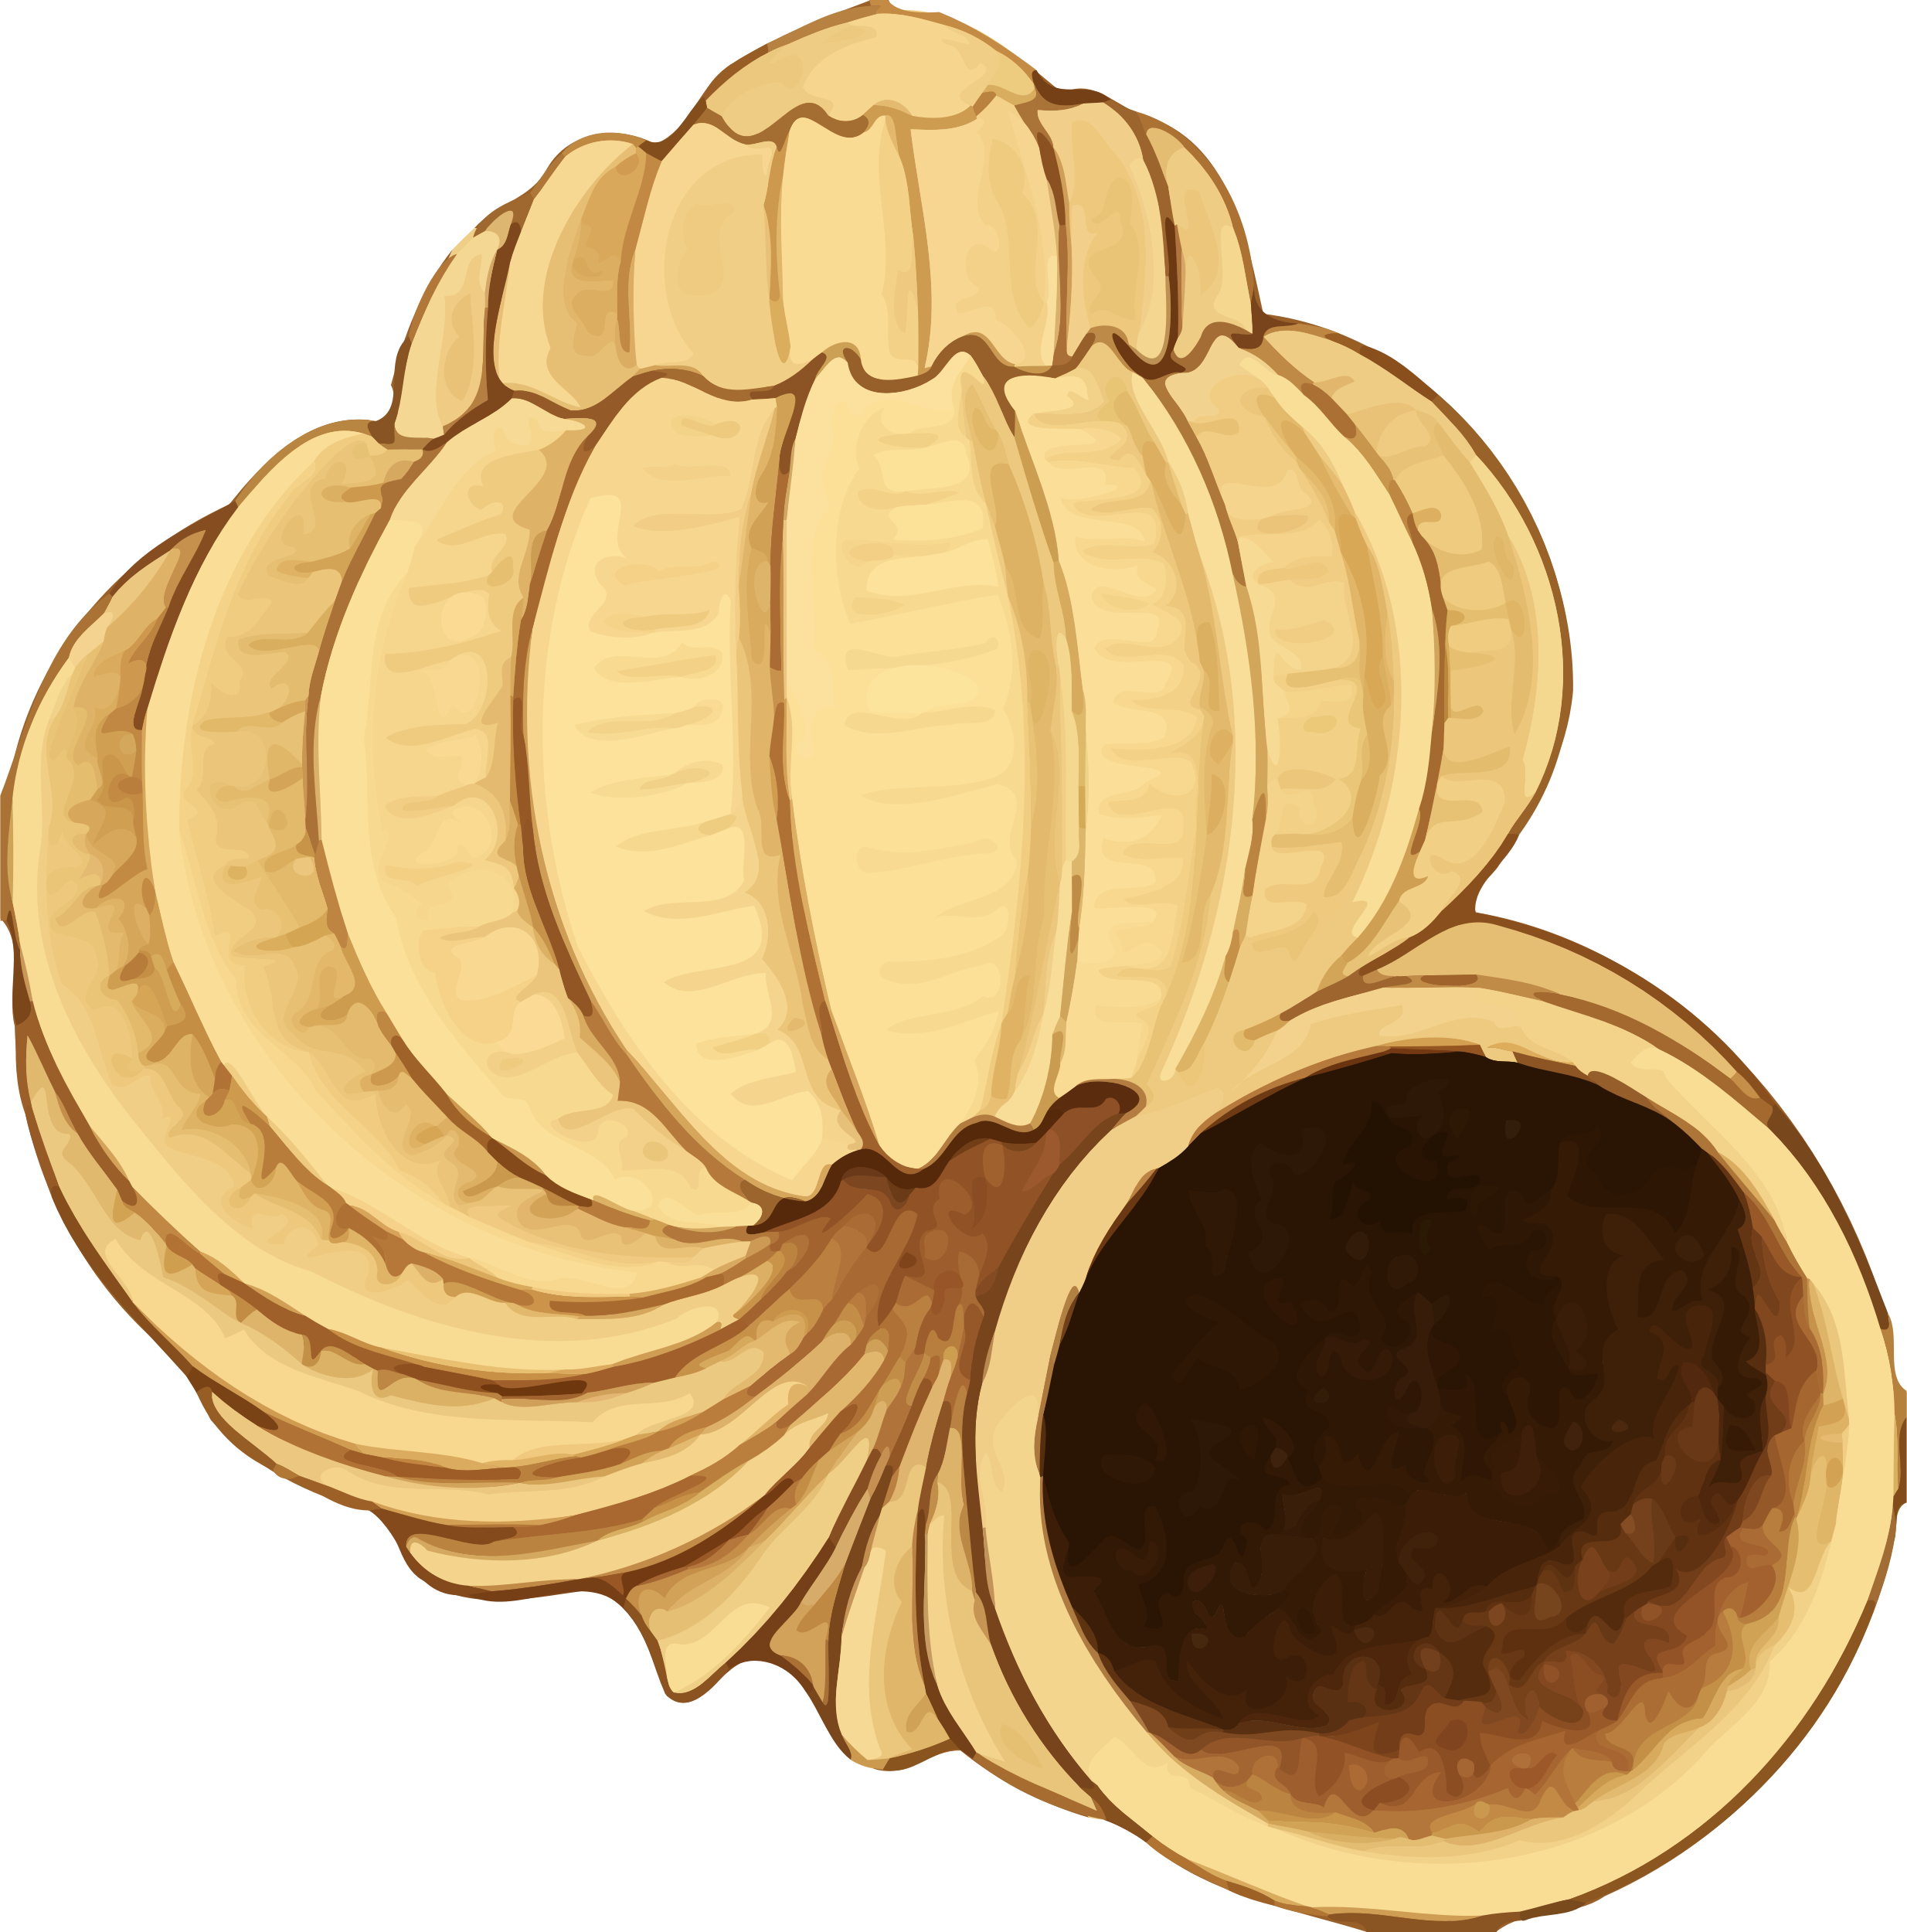 Big Image - Sea Shell 38 (2468x2500)